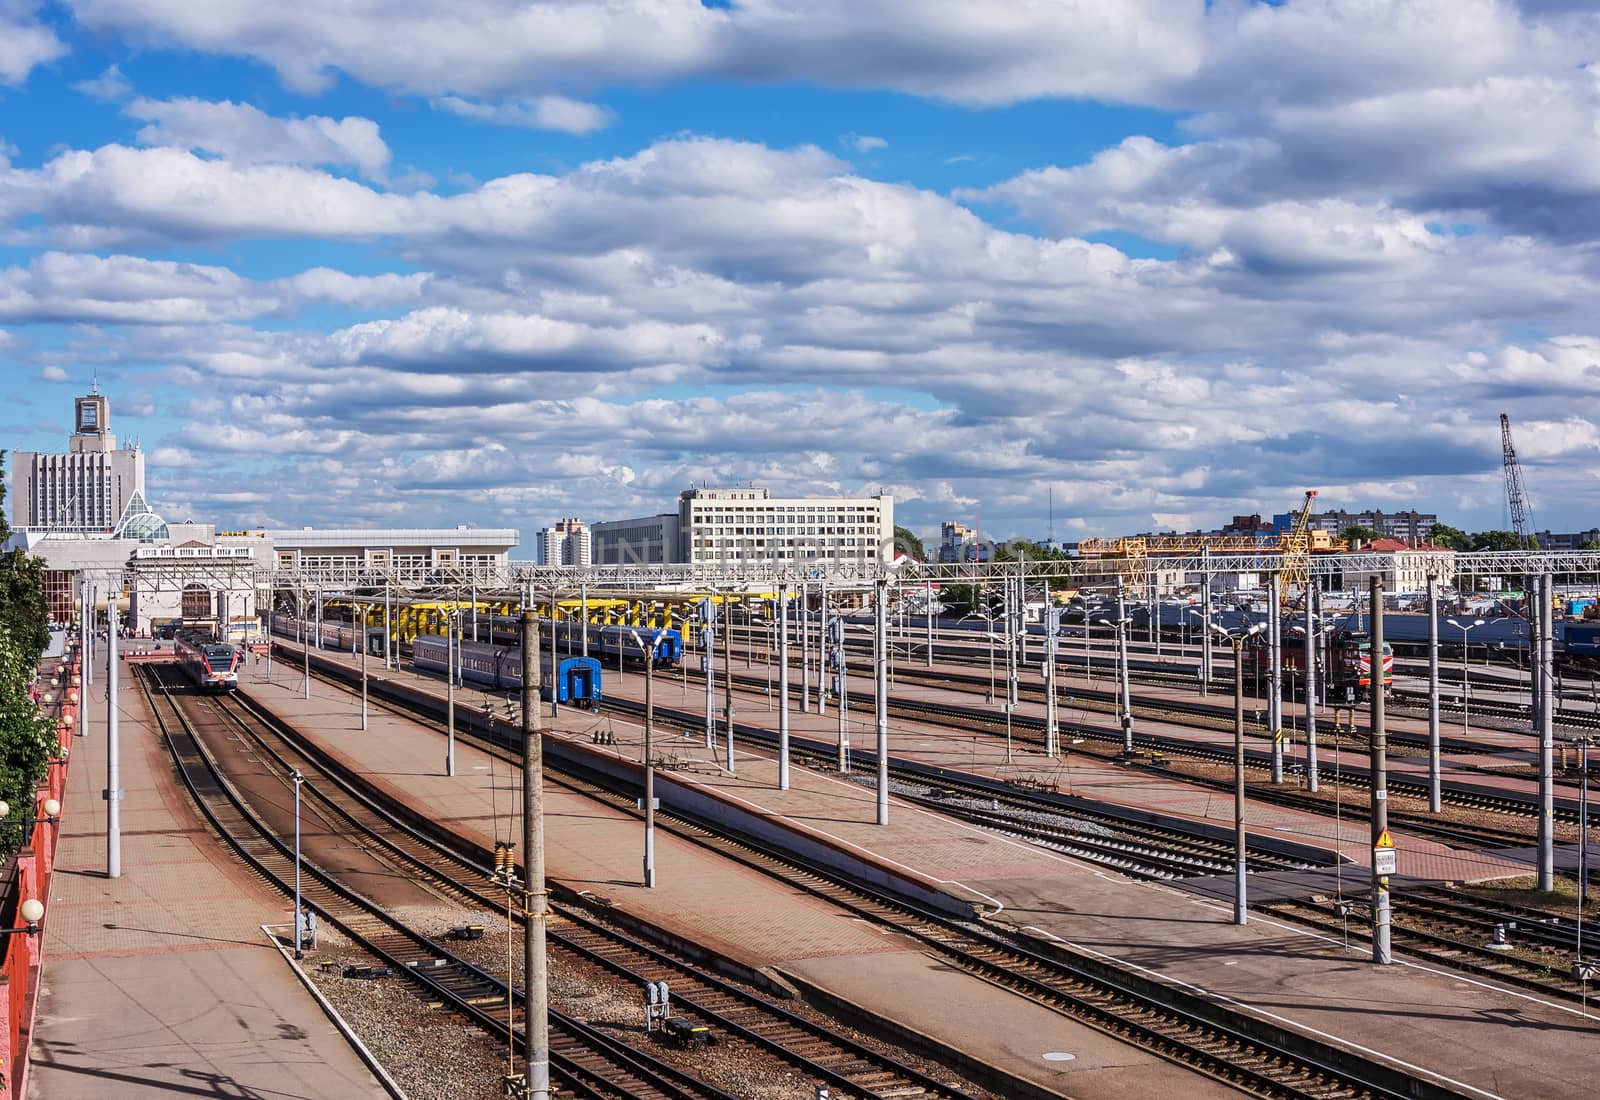 Belarus, Minsk - 08/15/2016: The railway station of the Minsk-Passazhirsky station (Belarus, Minsk)